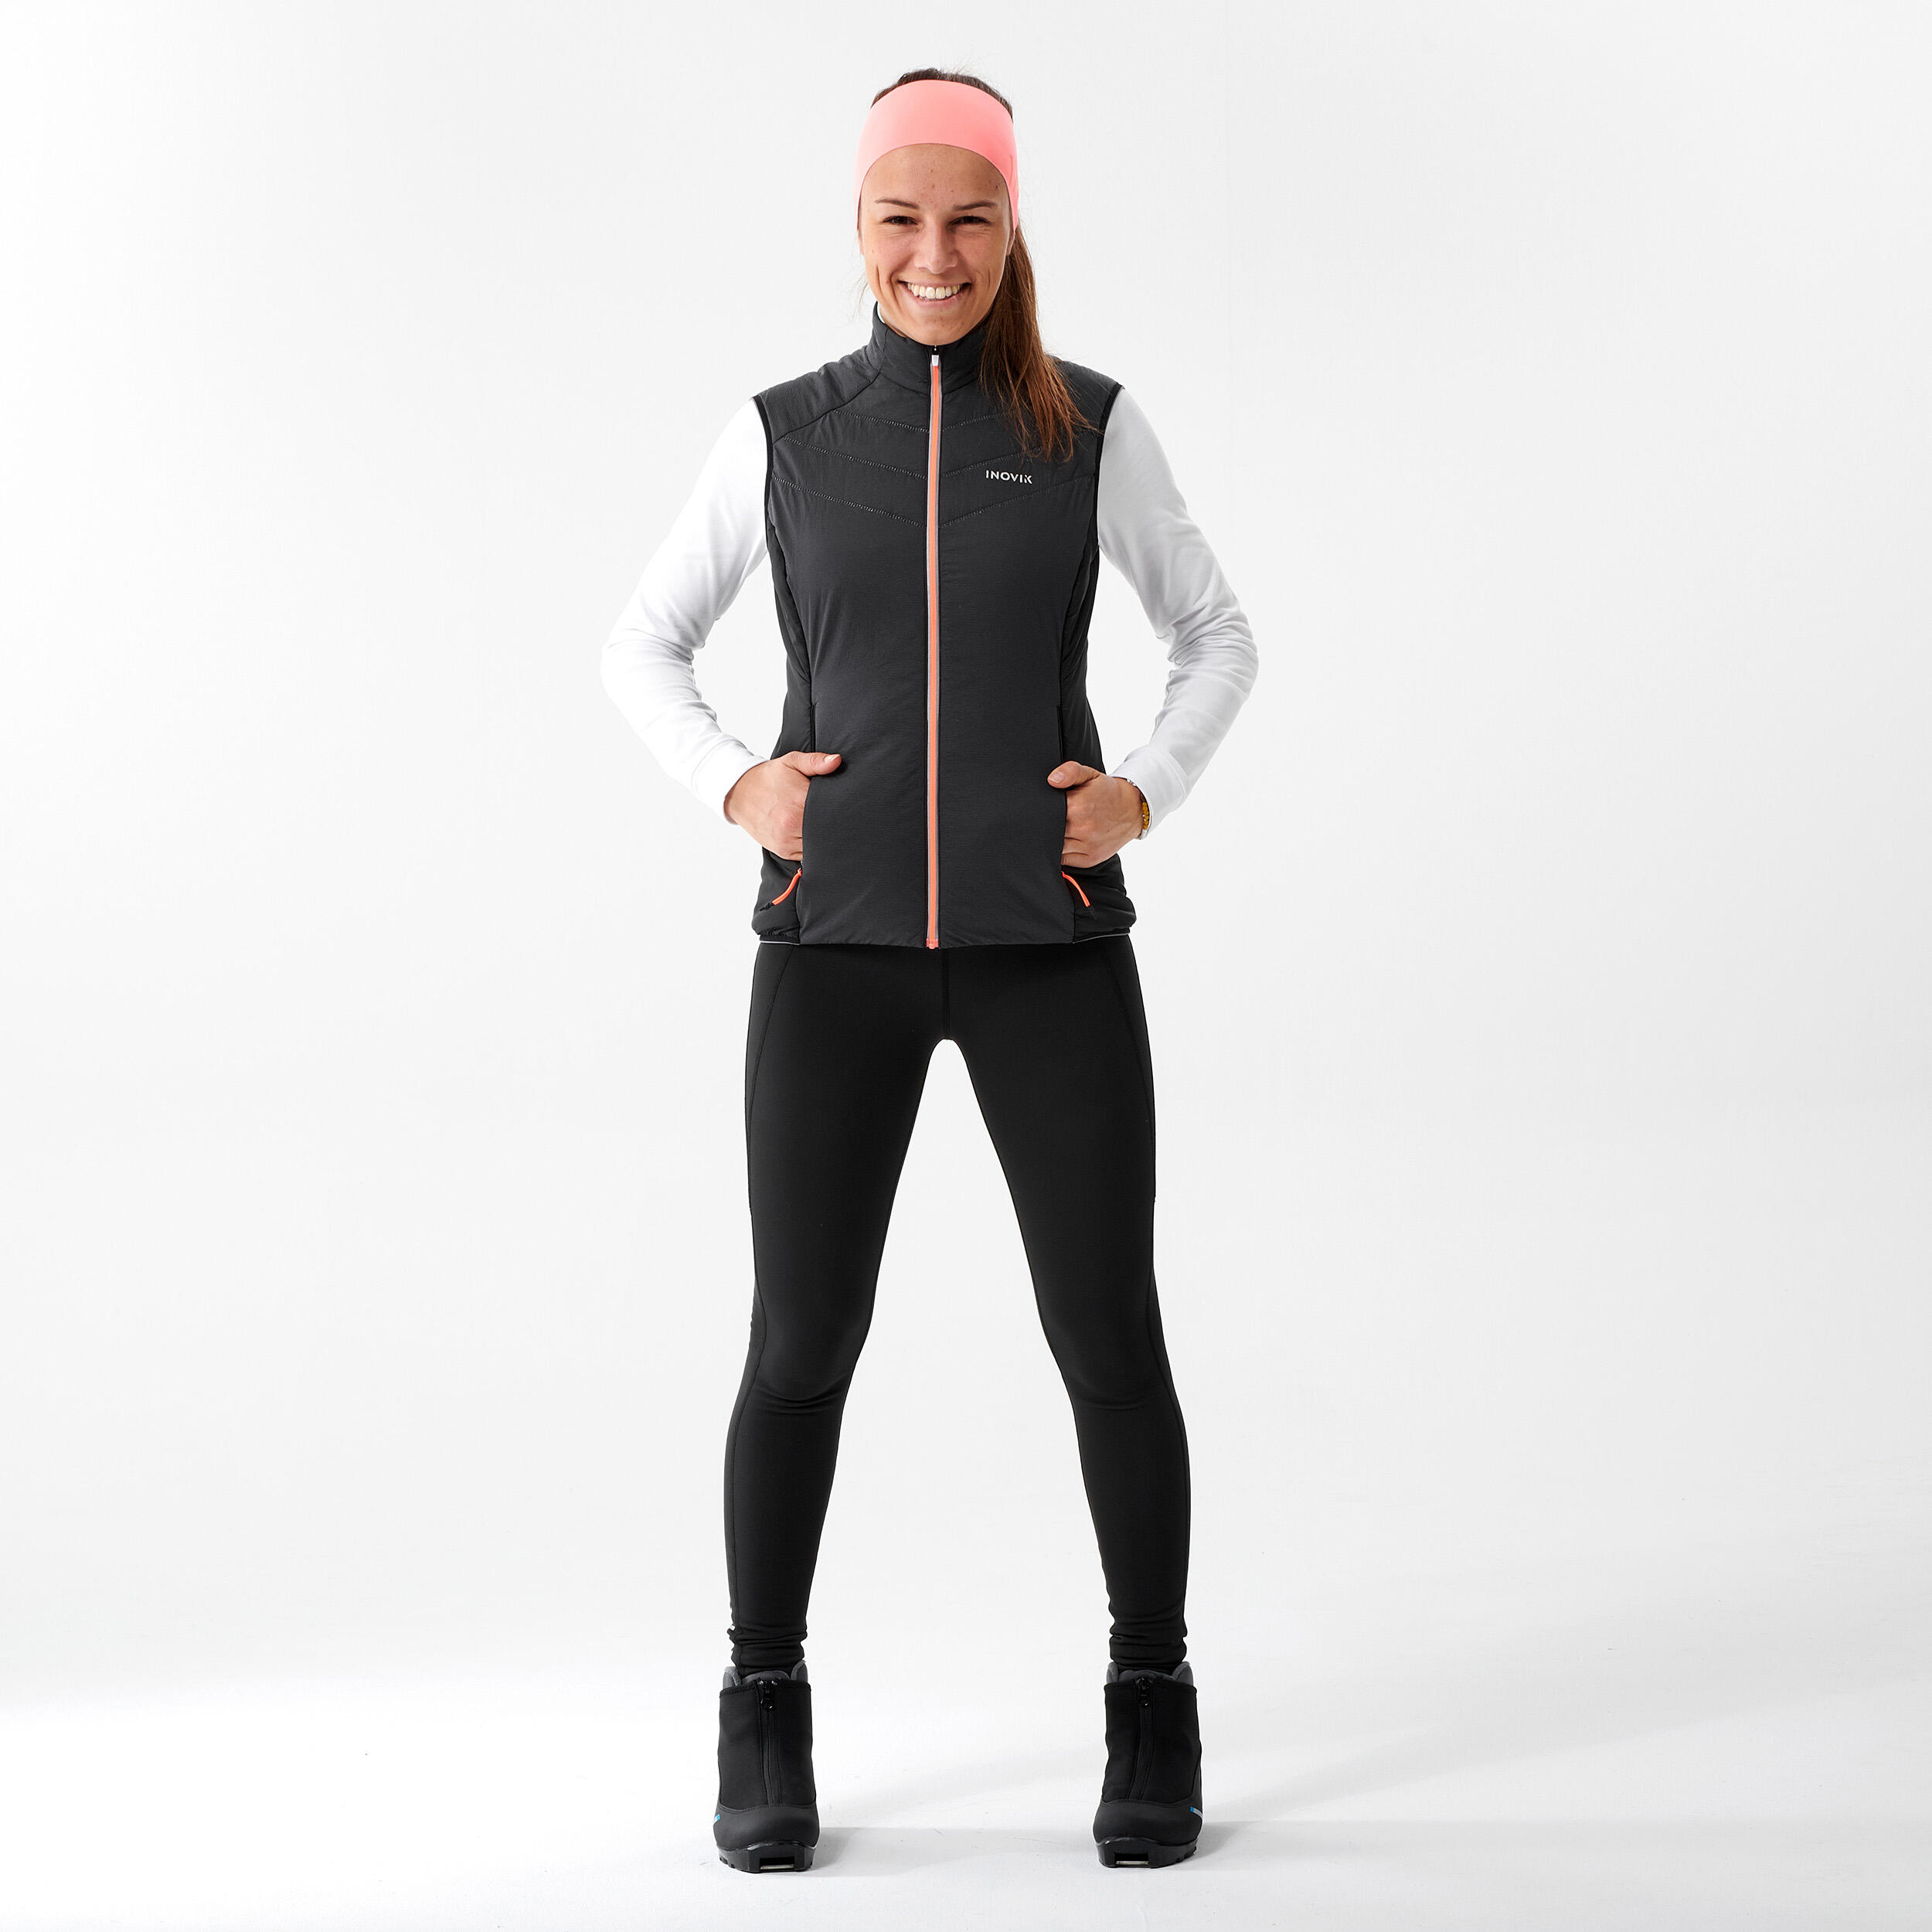 ODLO-COLLANT VELOCITY W BLACK - Cross-country ski leggings